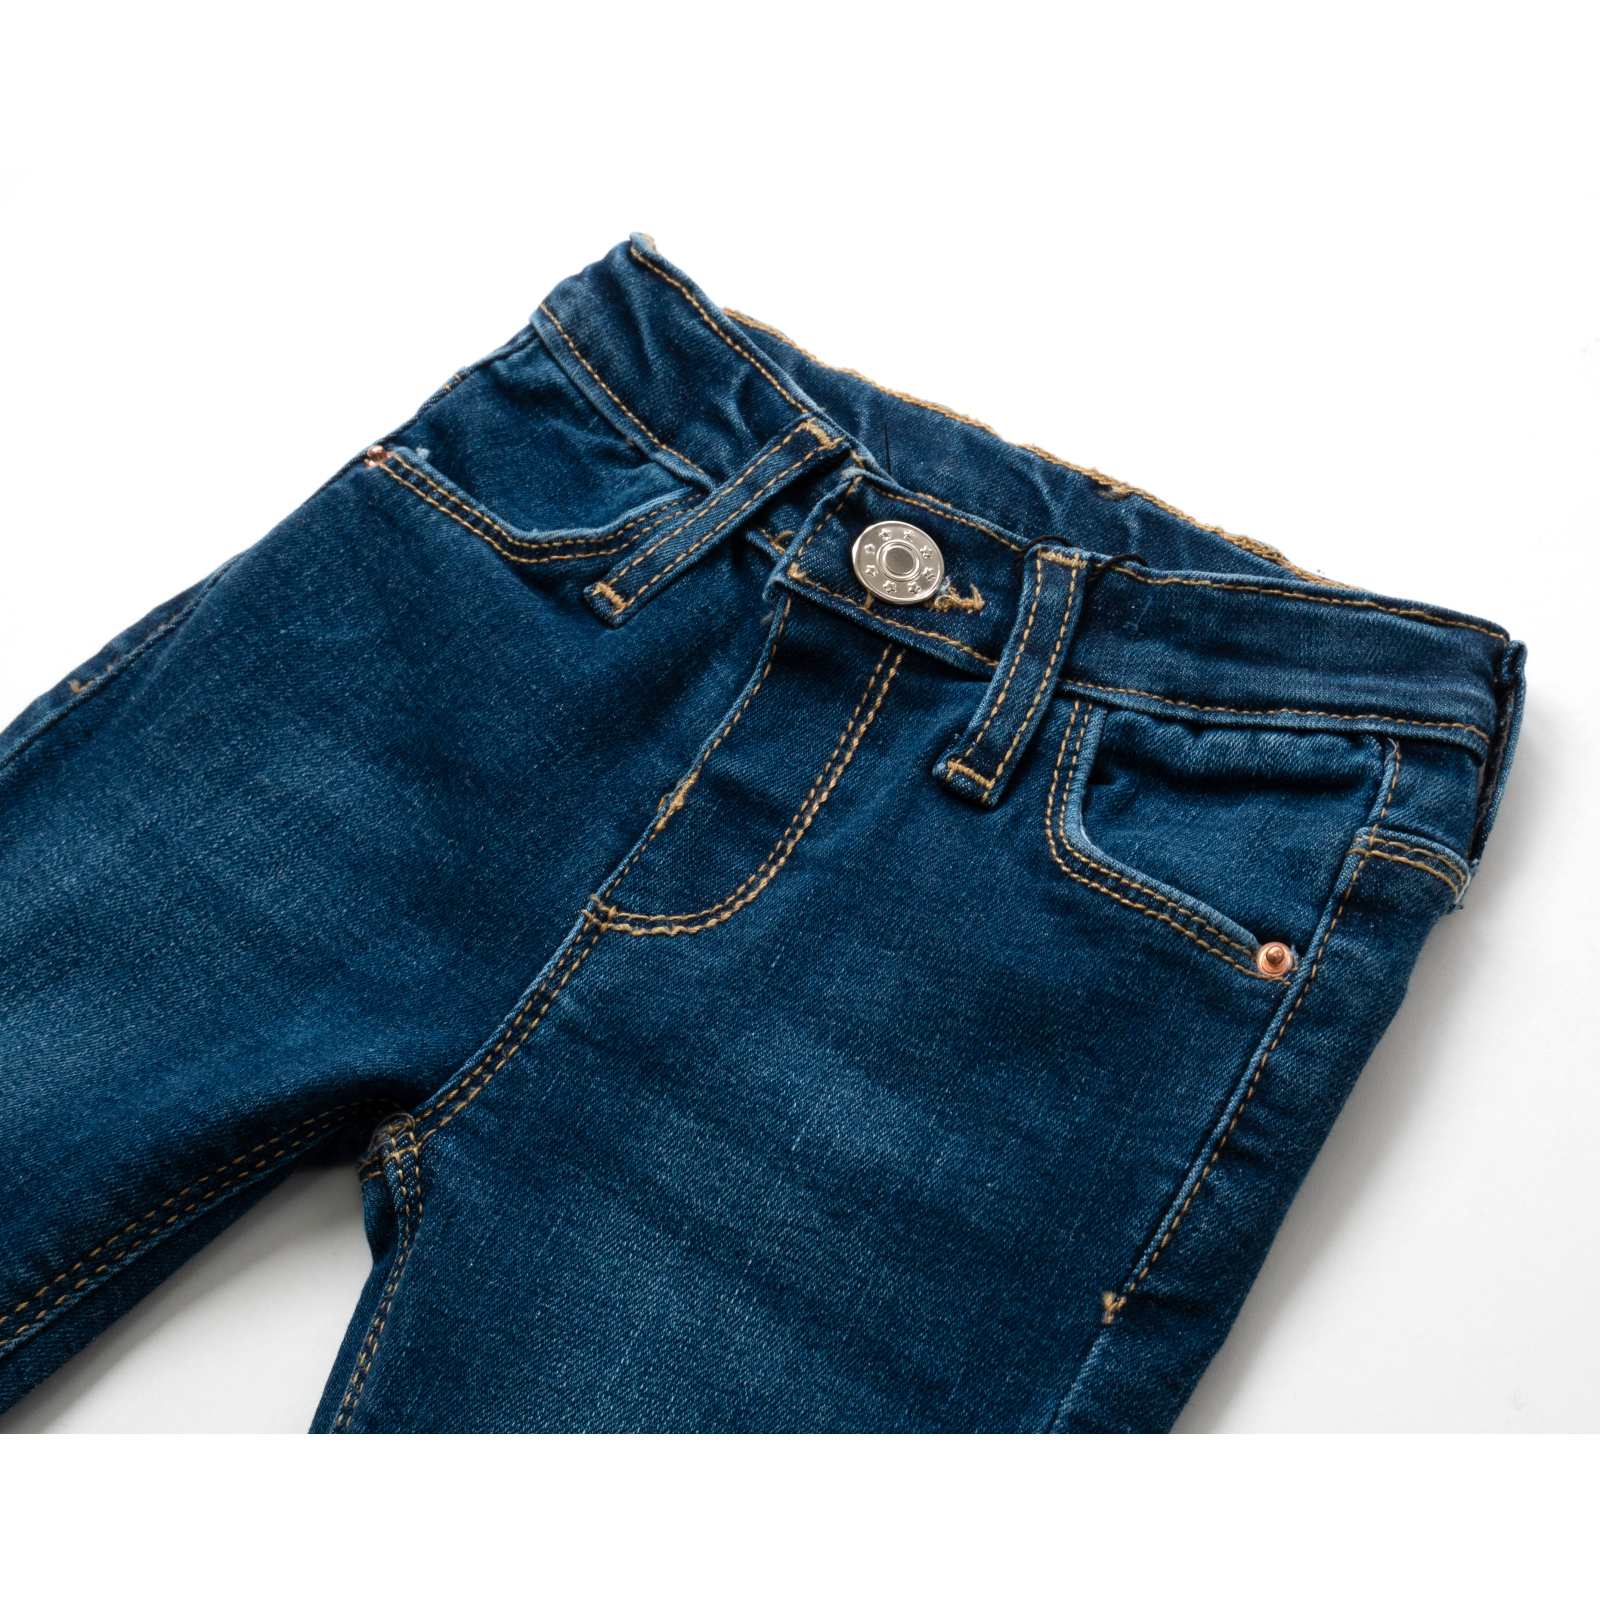 Штаны детские Breeze джинсовые (17427-92G-blue) изображение 4